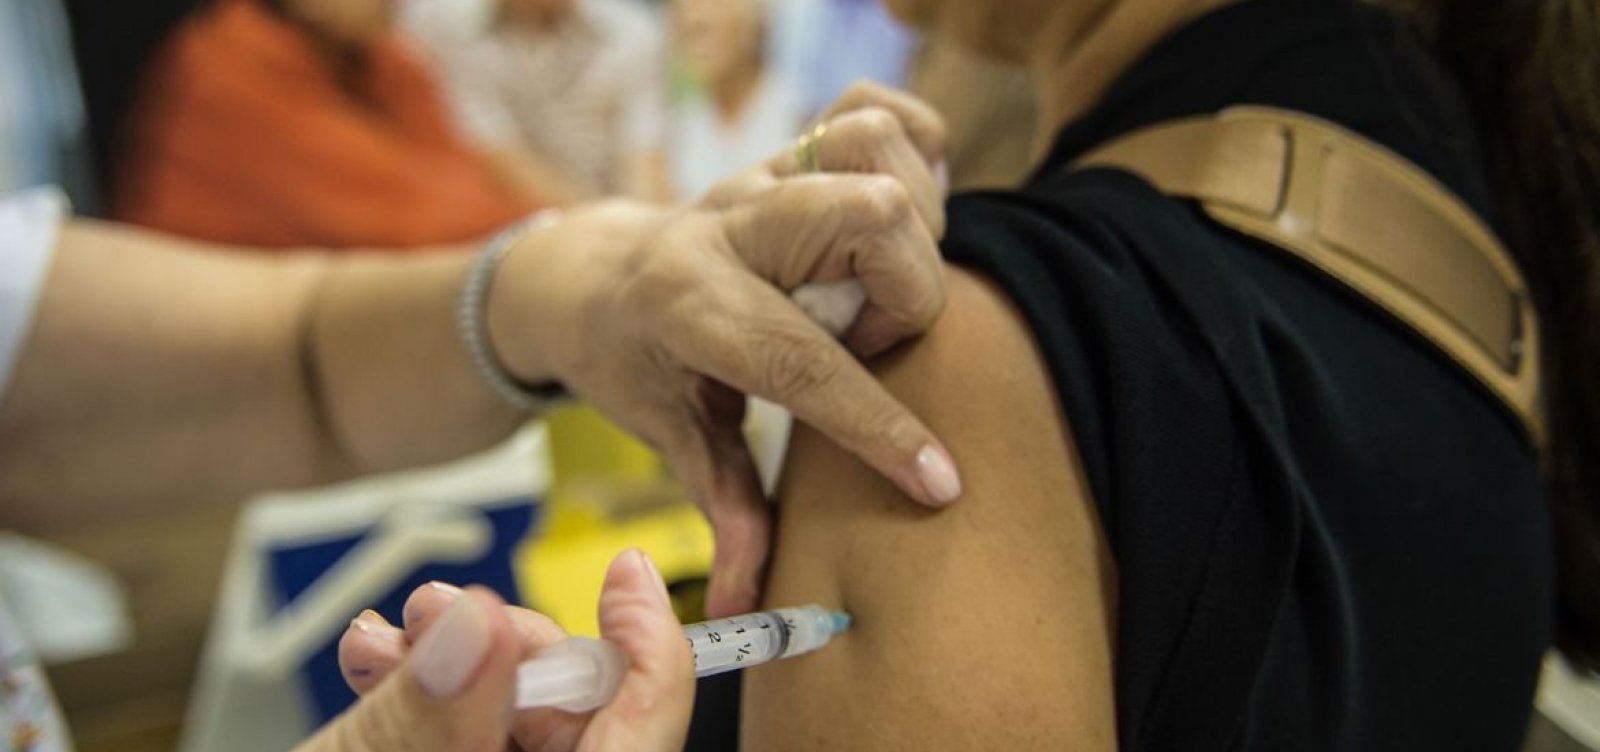 Bahia vacinou apenas 30% do público-alvo em campanha contra poliomielite